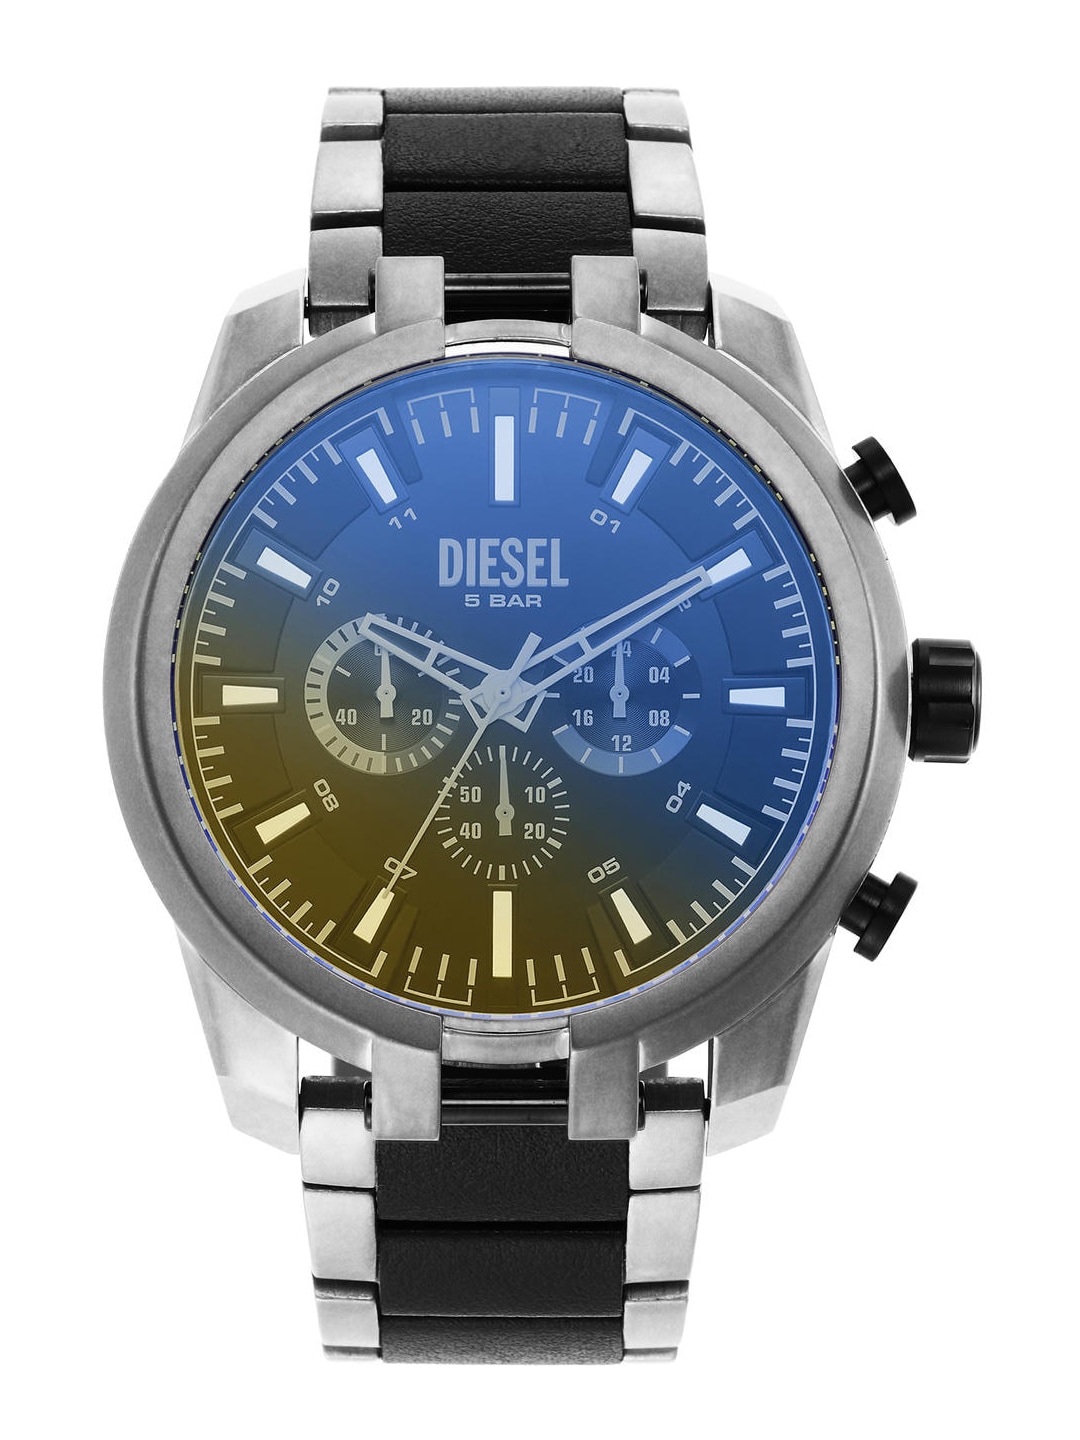 Buy Diesel Watches Online India In